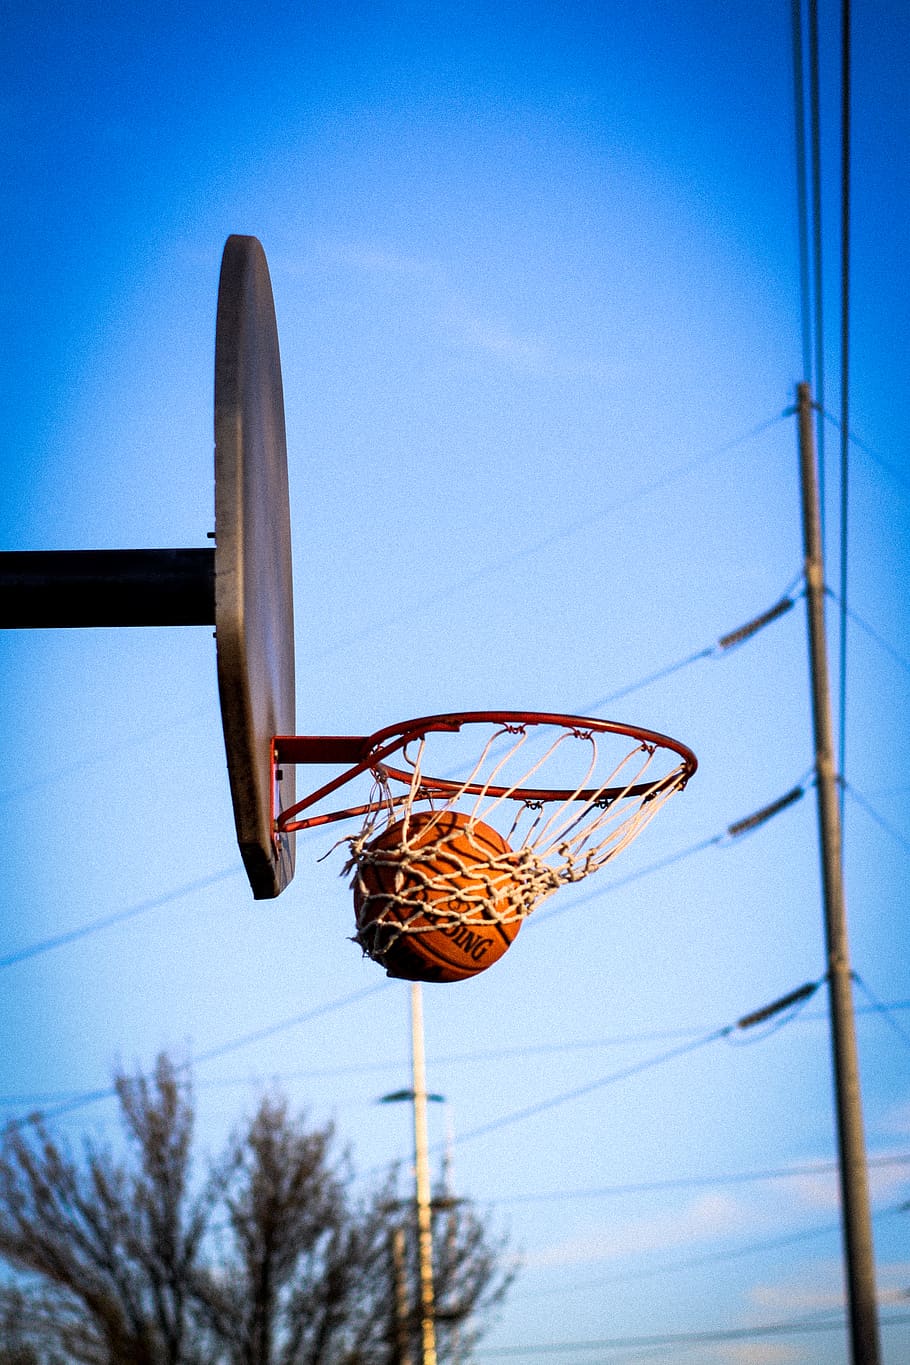 Basketball Net, Basketball Basket, Basketball Court, - Basket In Basketball - HD Wallpaper 